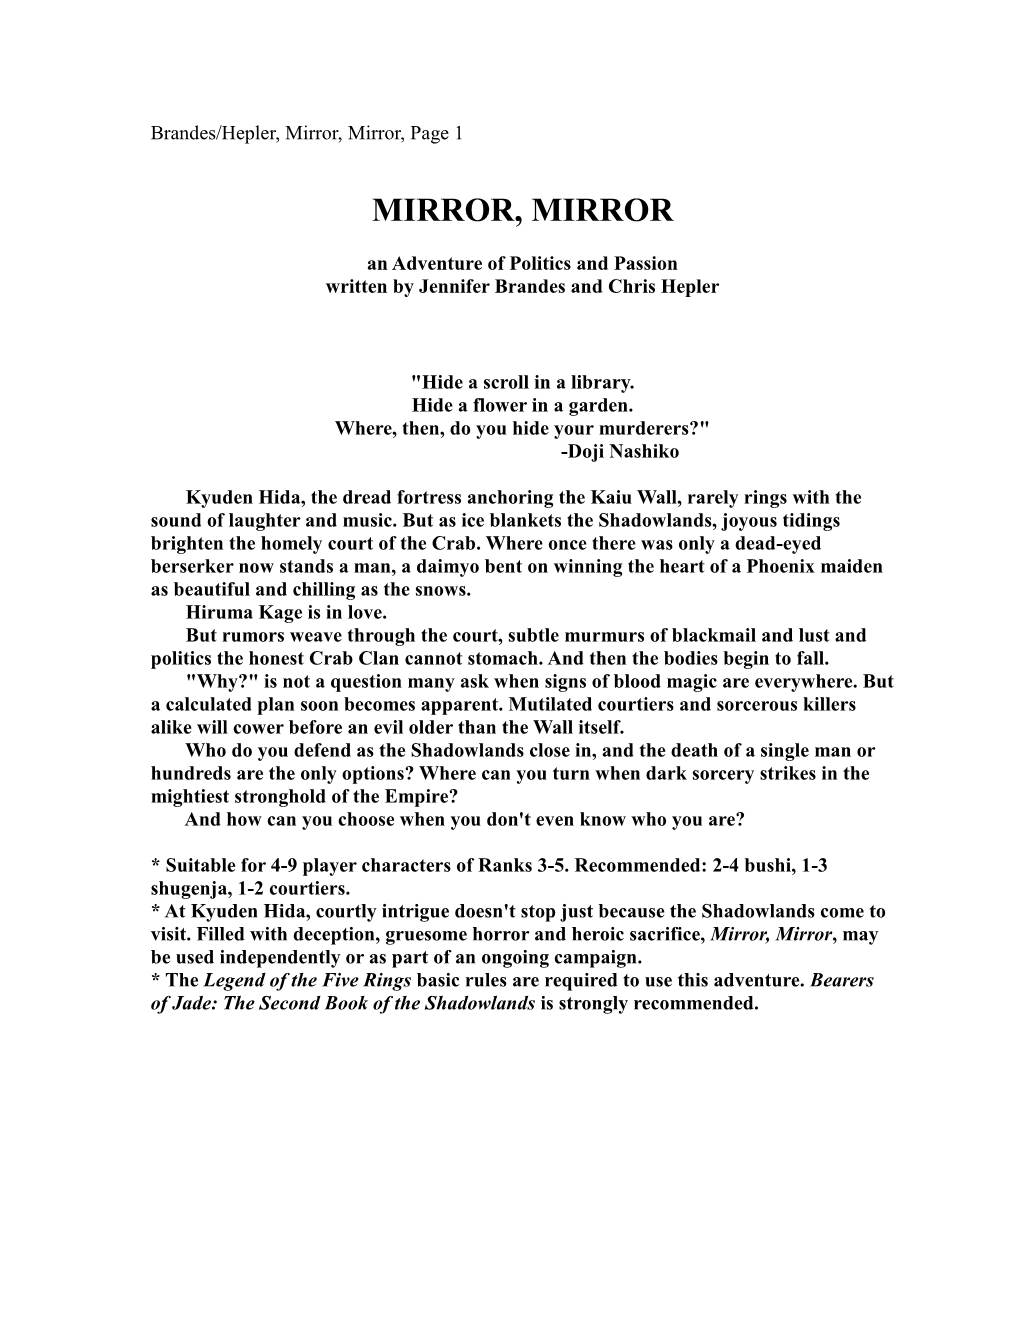 Mirror, Mirror, Page 1